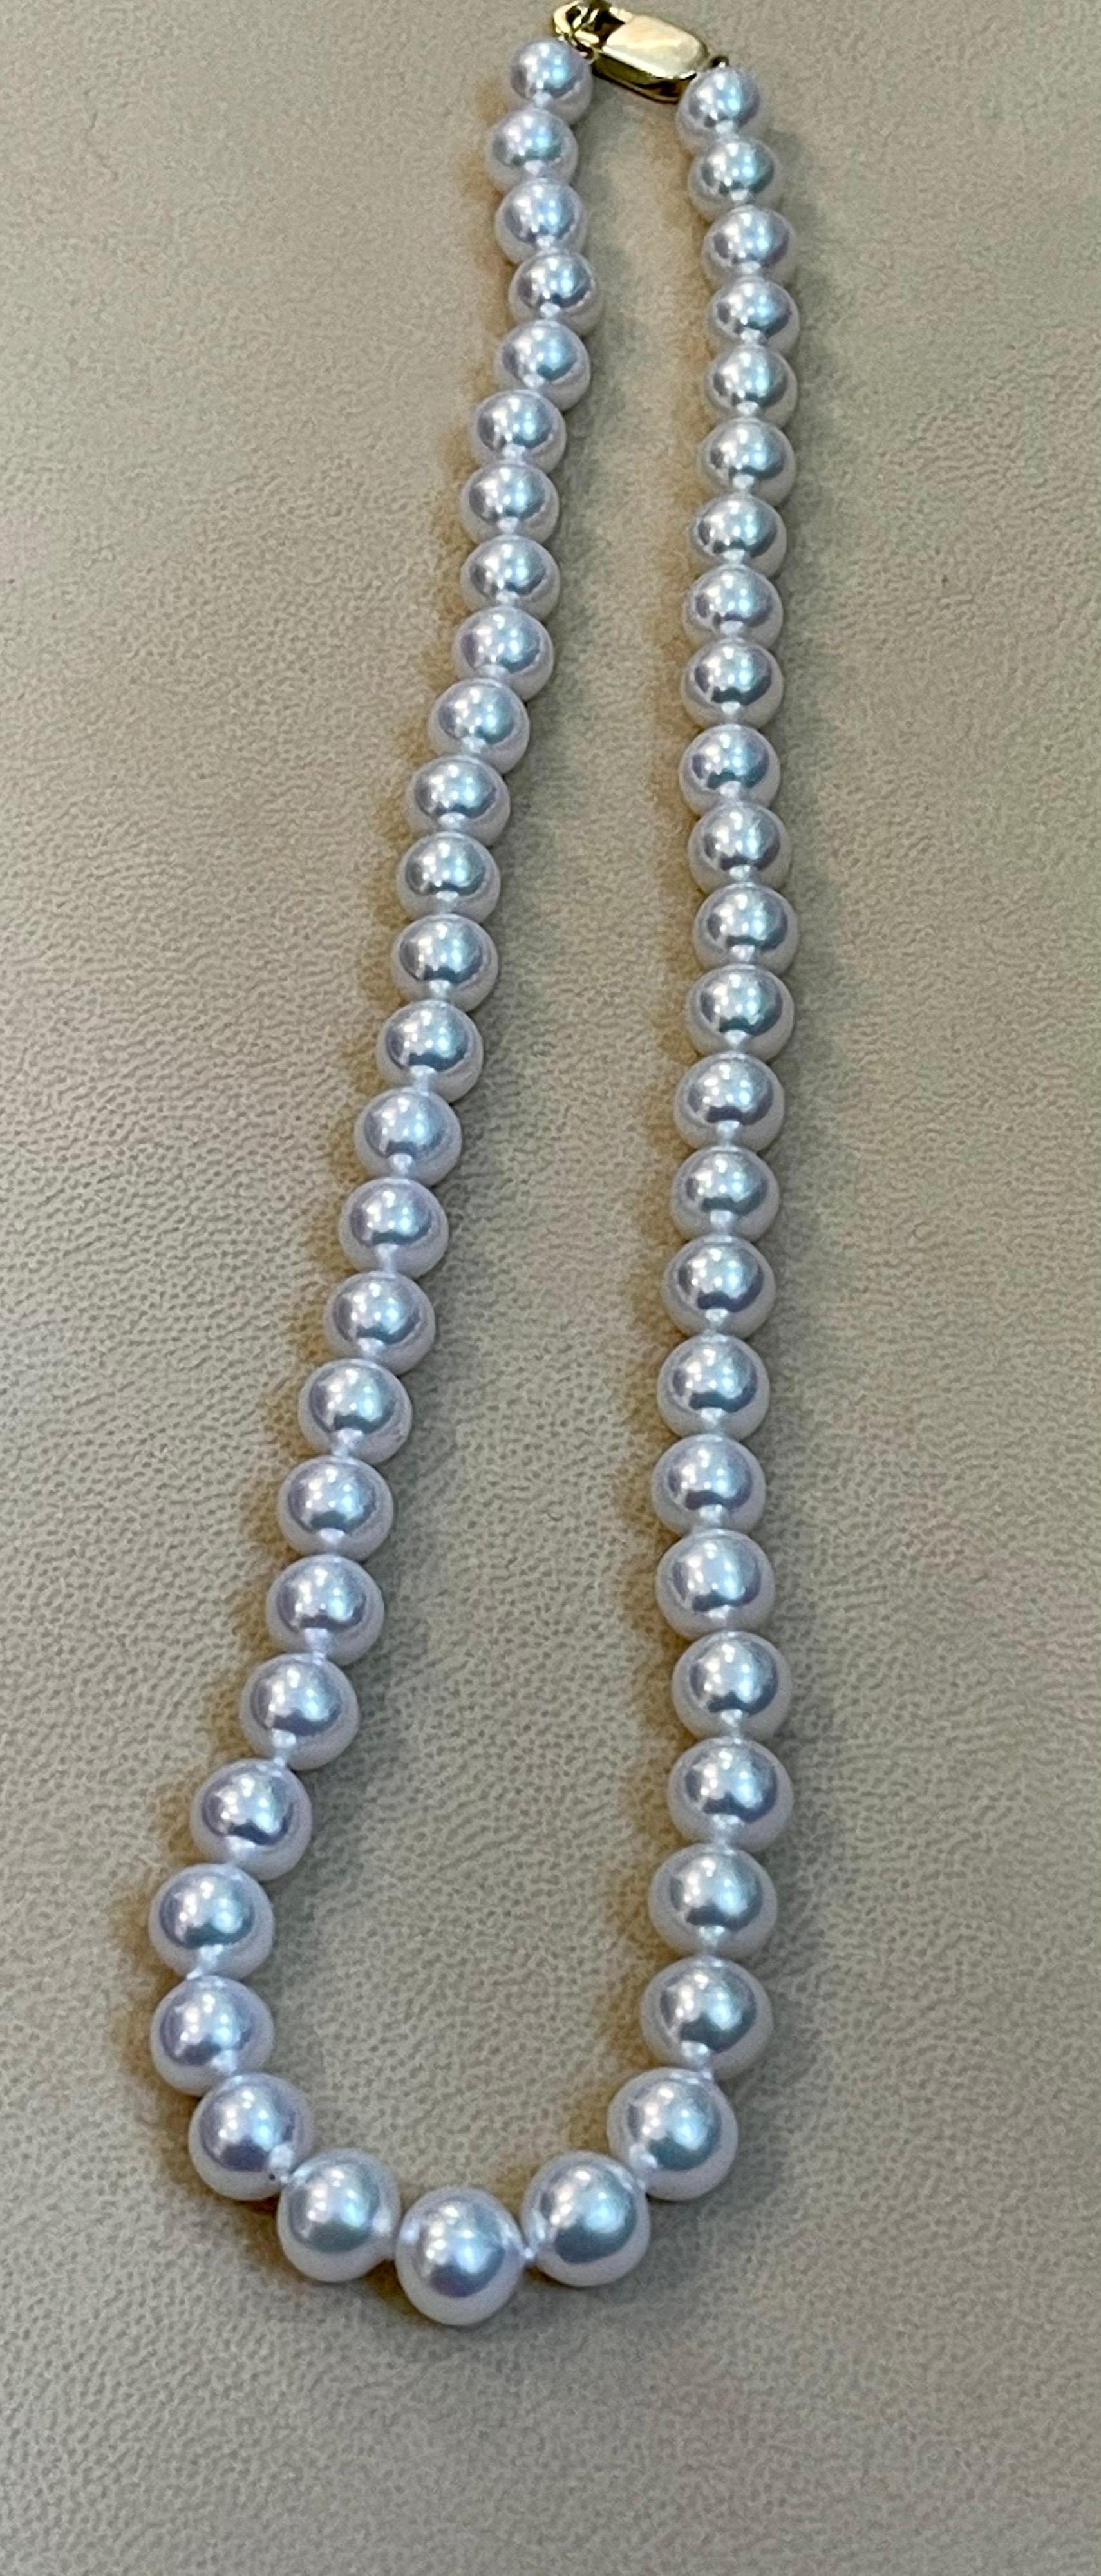 Round Cut 50 Round Akoya Pearls Strand Necklace Set in 14 Karat Gold Clasp